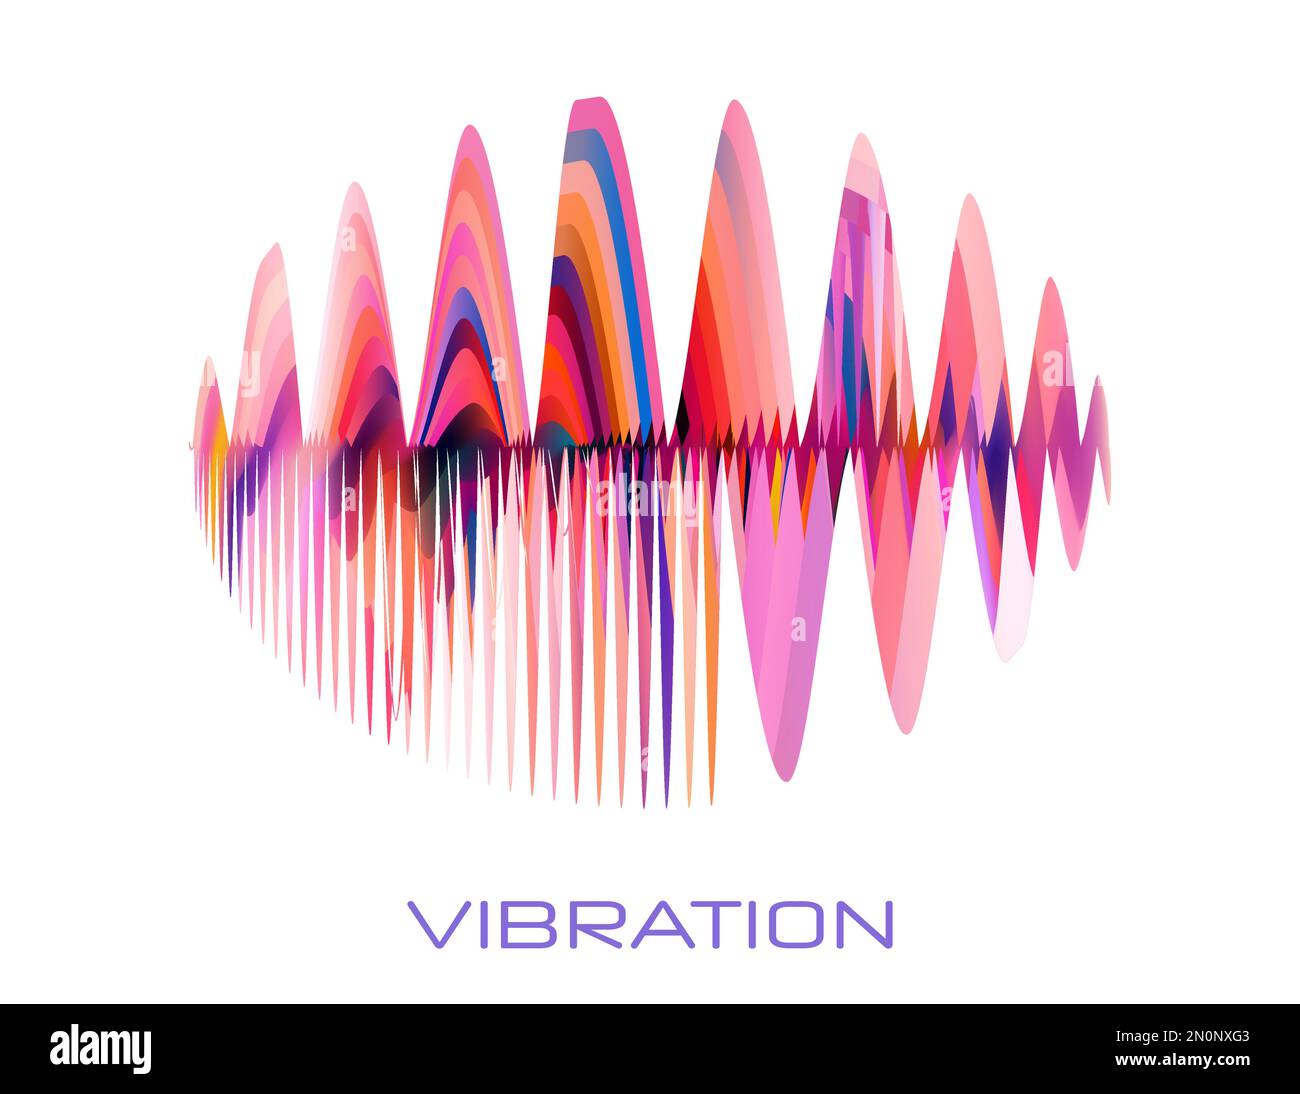 Vibration. Abstrakte Farbschwankungen auf weißem Hintergrund. Vektorgrafiken Stock Vektor